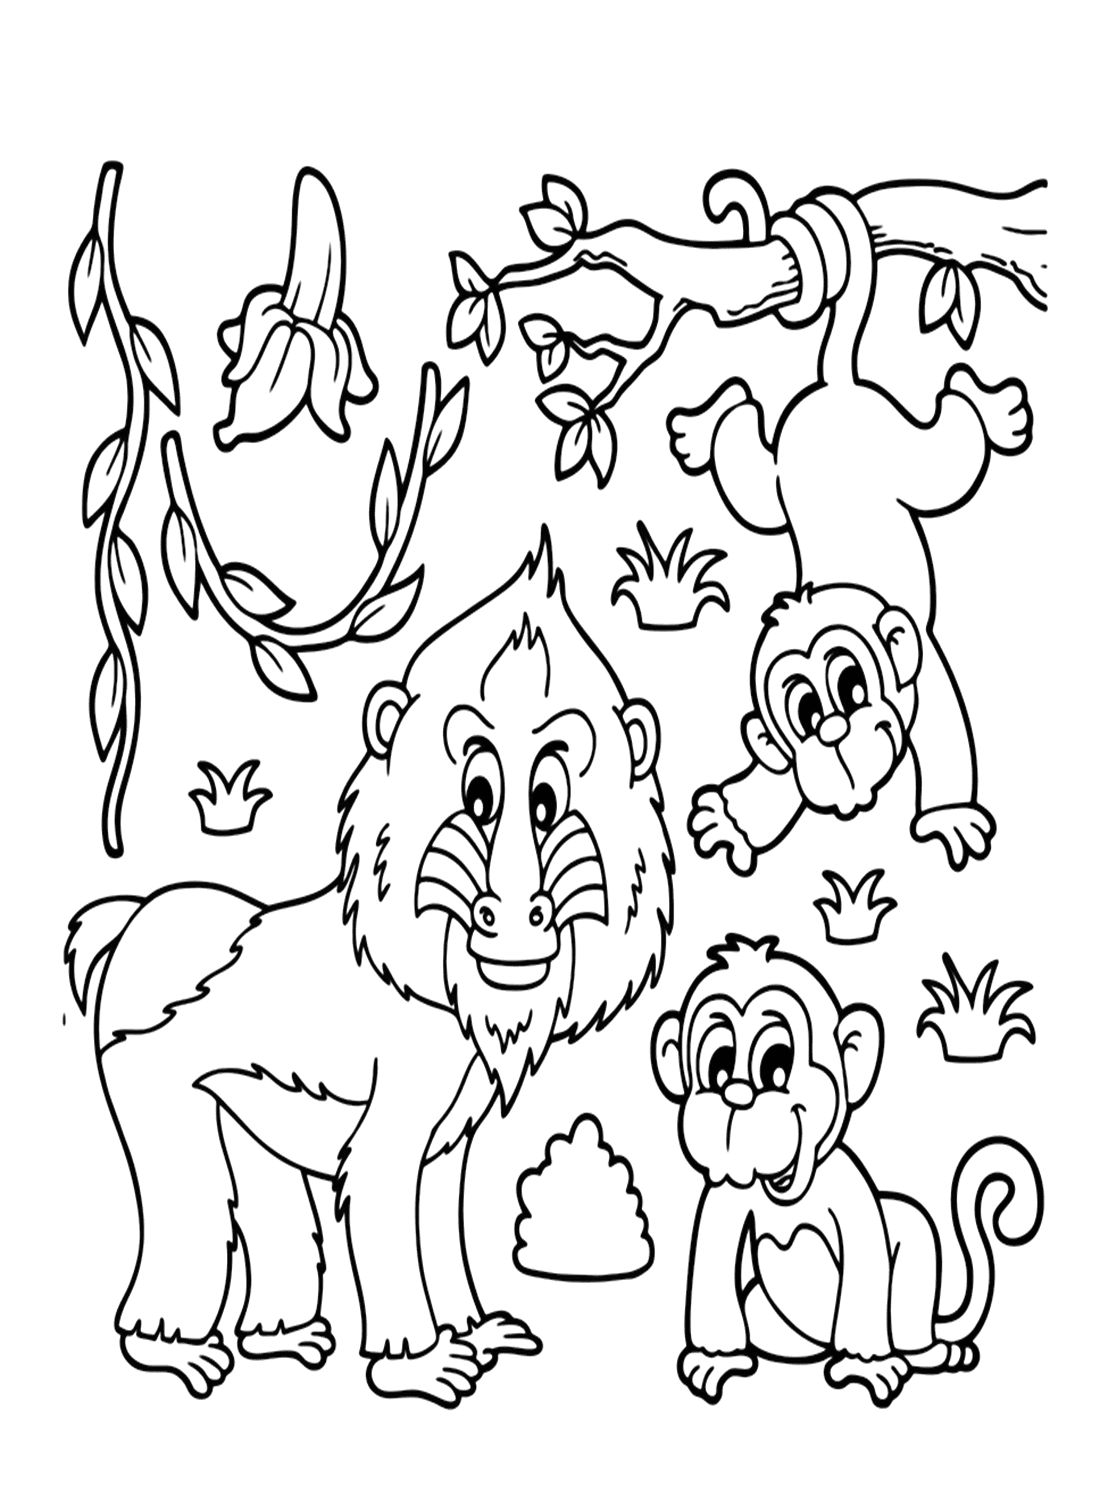 الماندريل والقرود الصغيرة من الماندريل